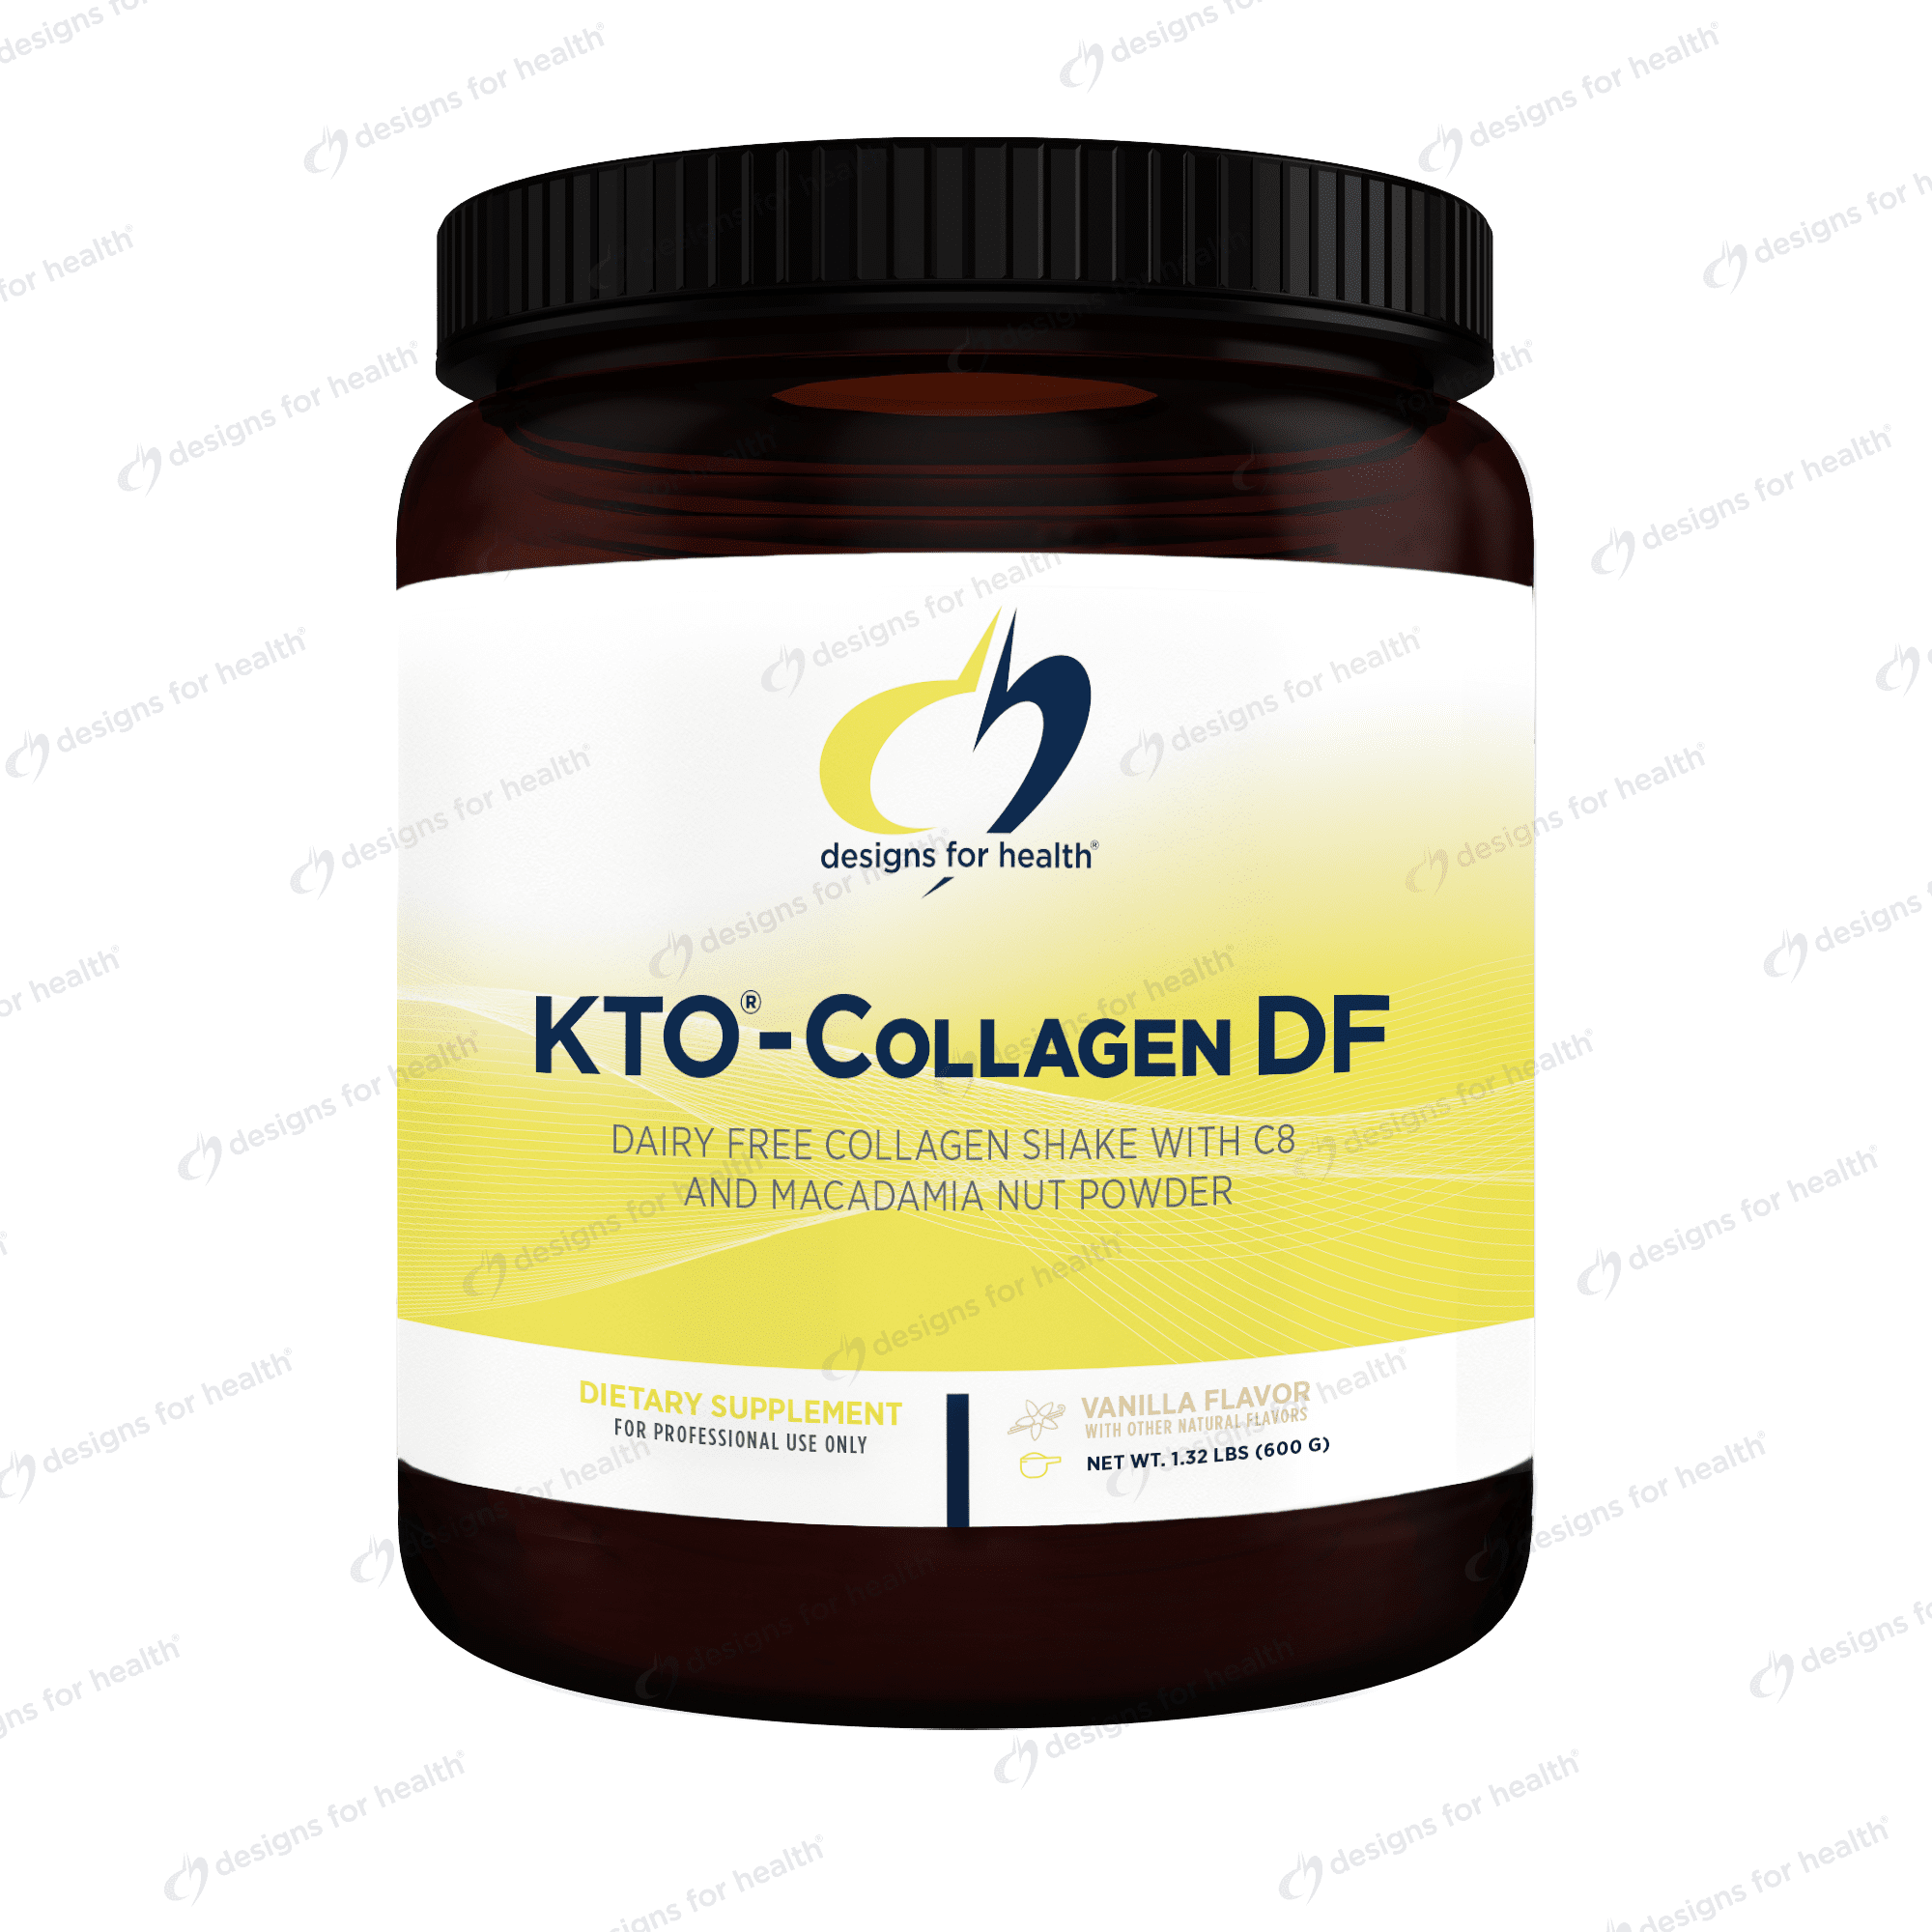 KTO®-Collagen DF